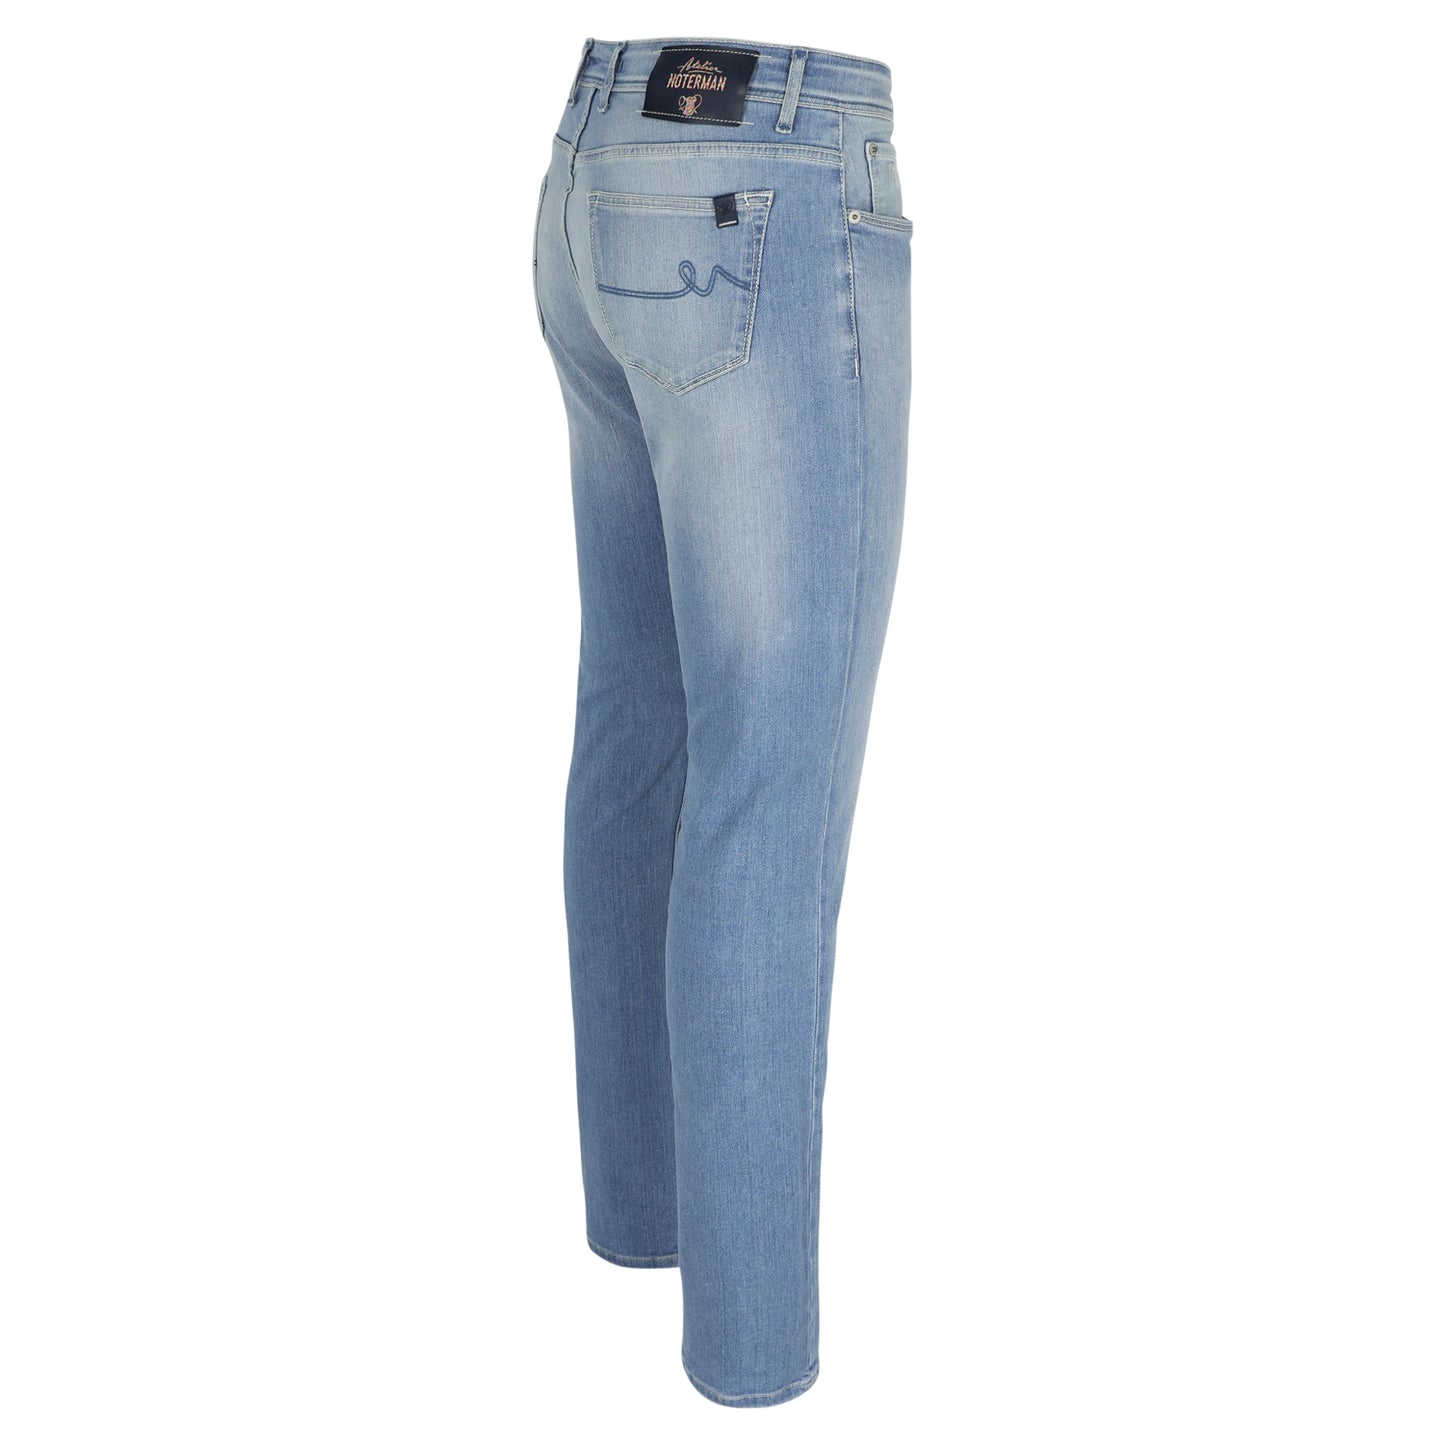 Bleke slim fit jeans Atelier Noterman - 0638/103